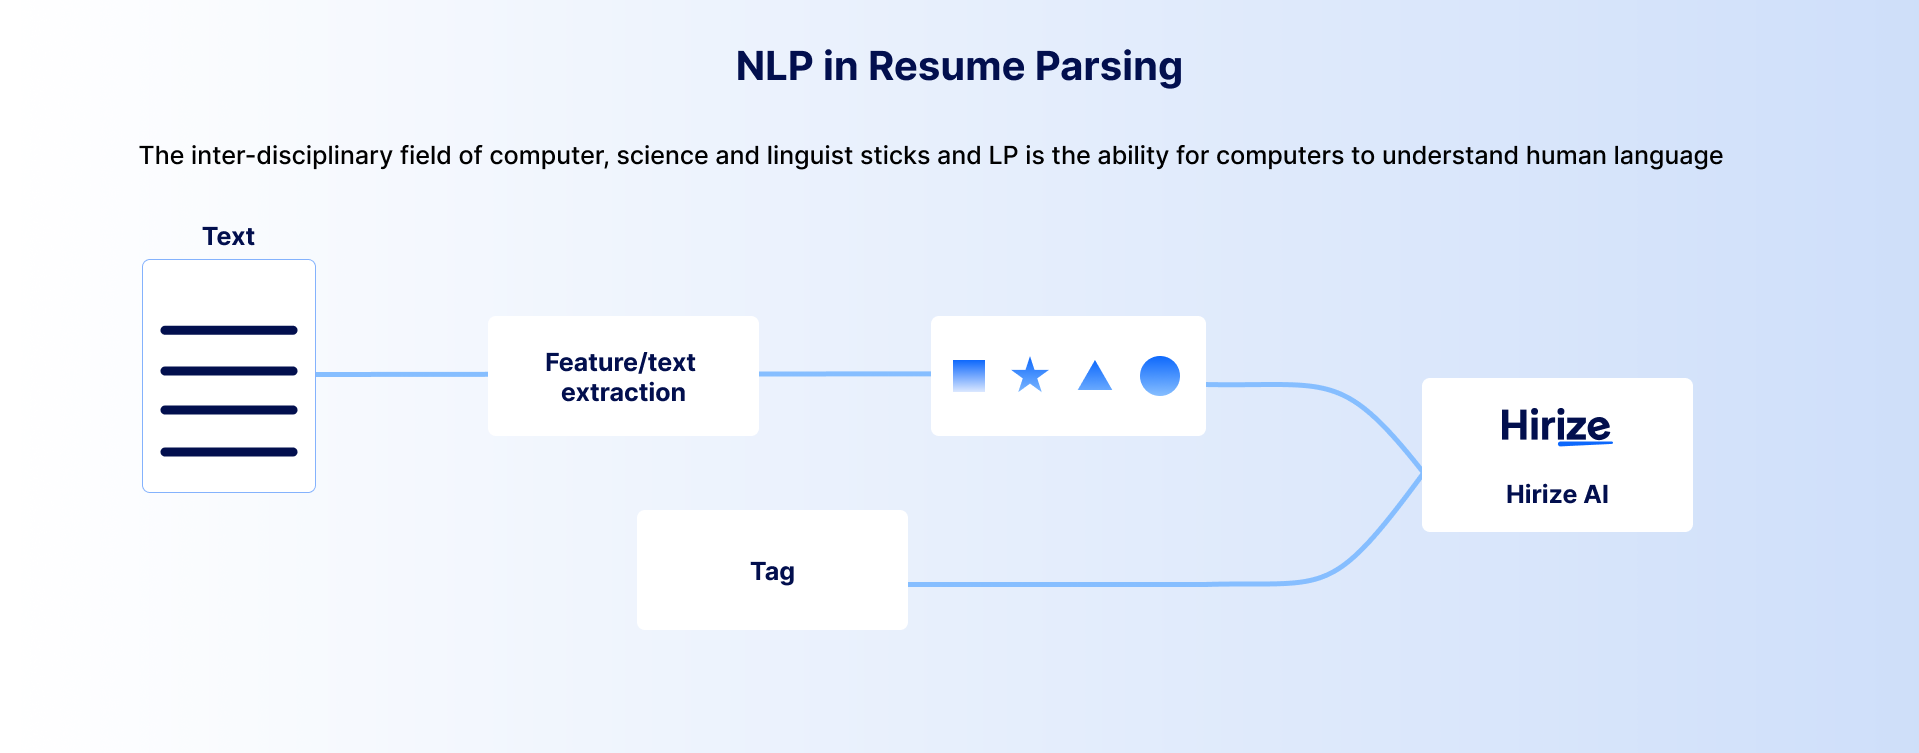 nlp in resume parsing